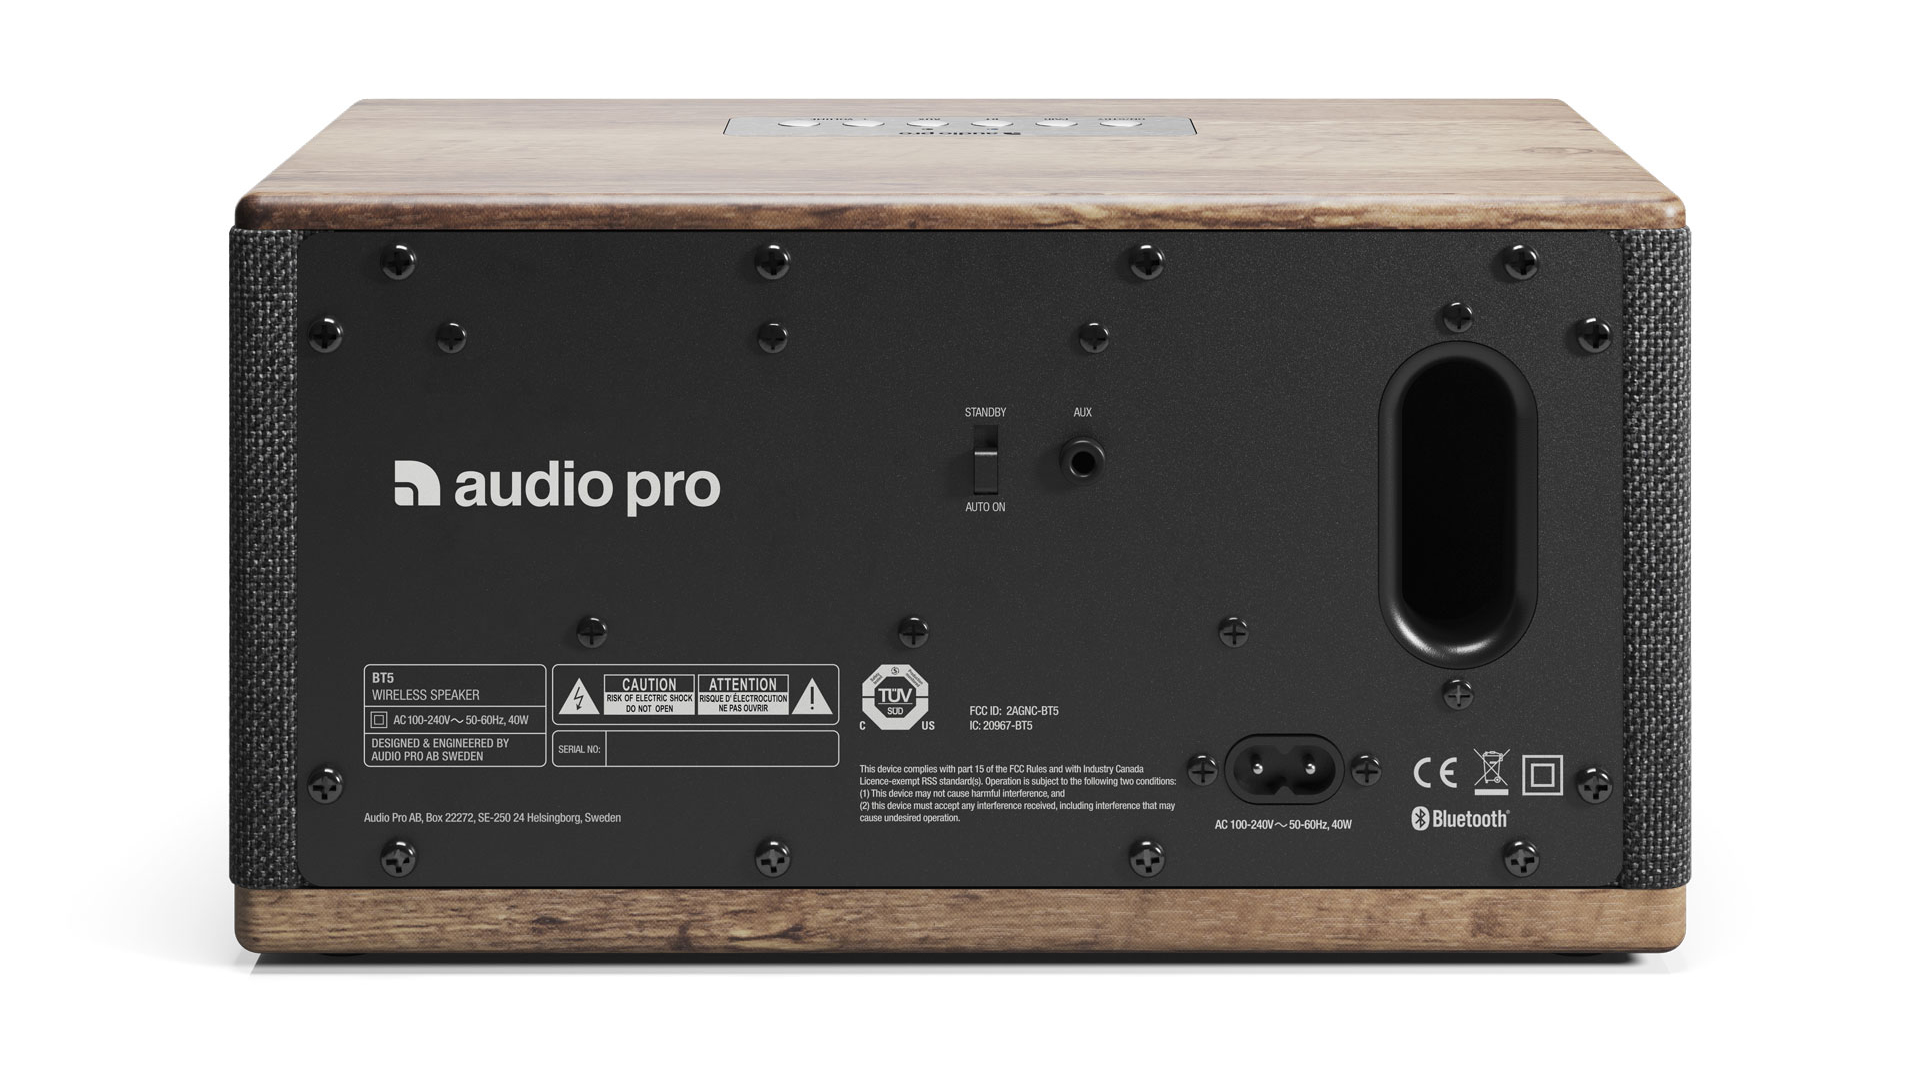 Audio Pro BT5 features